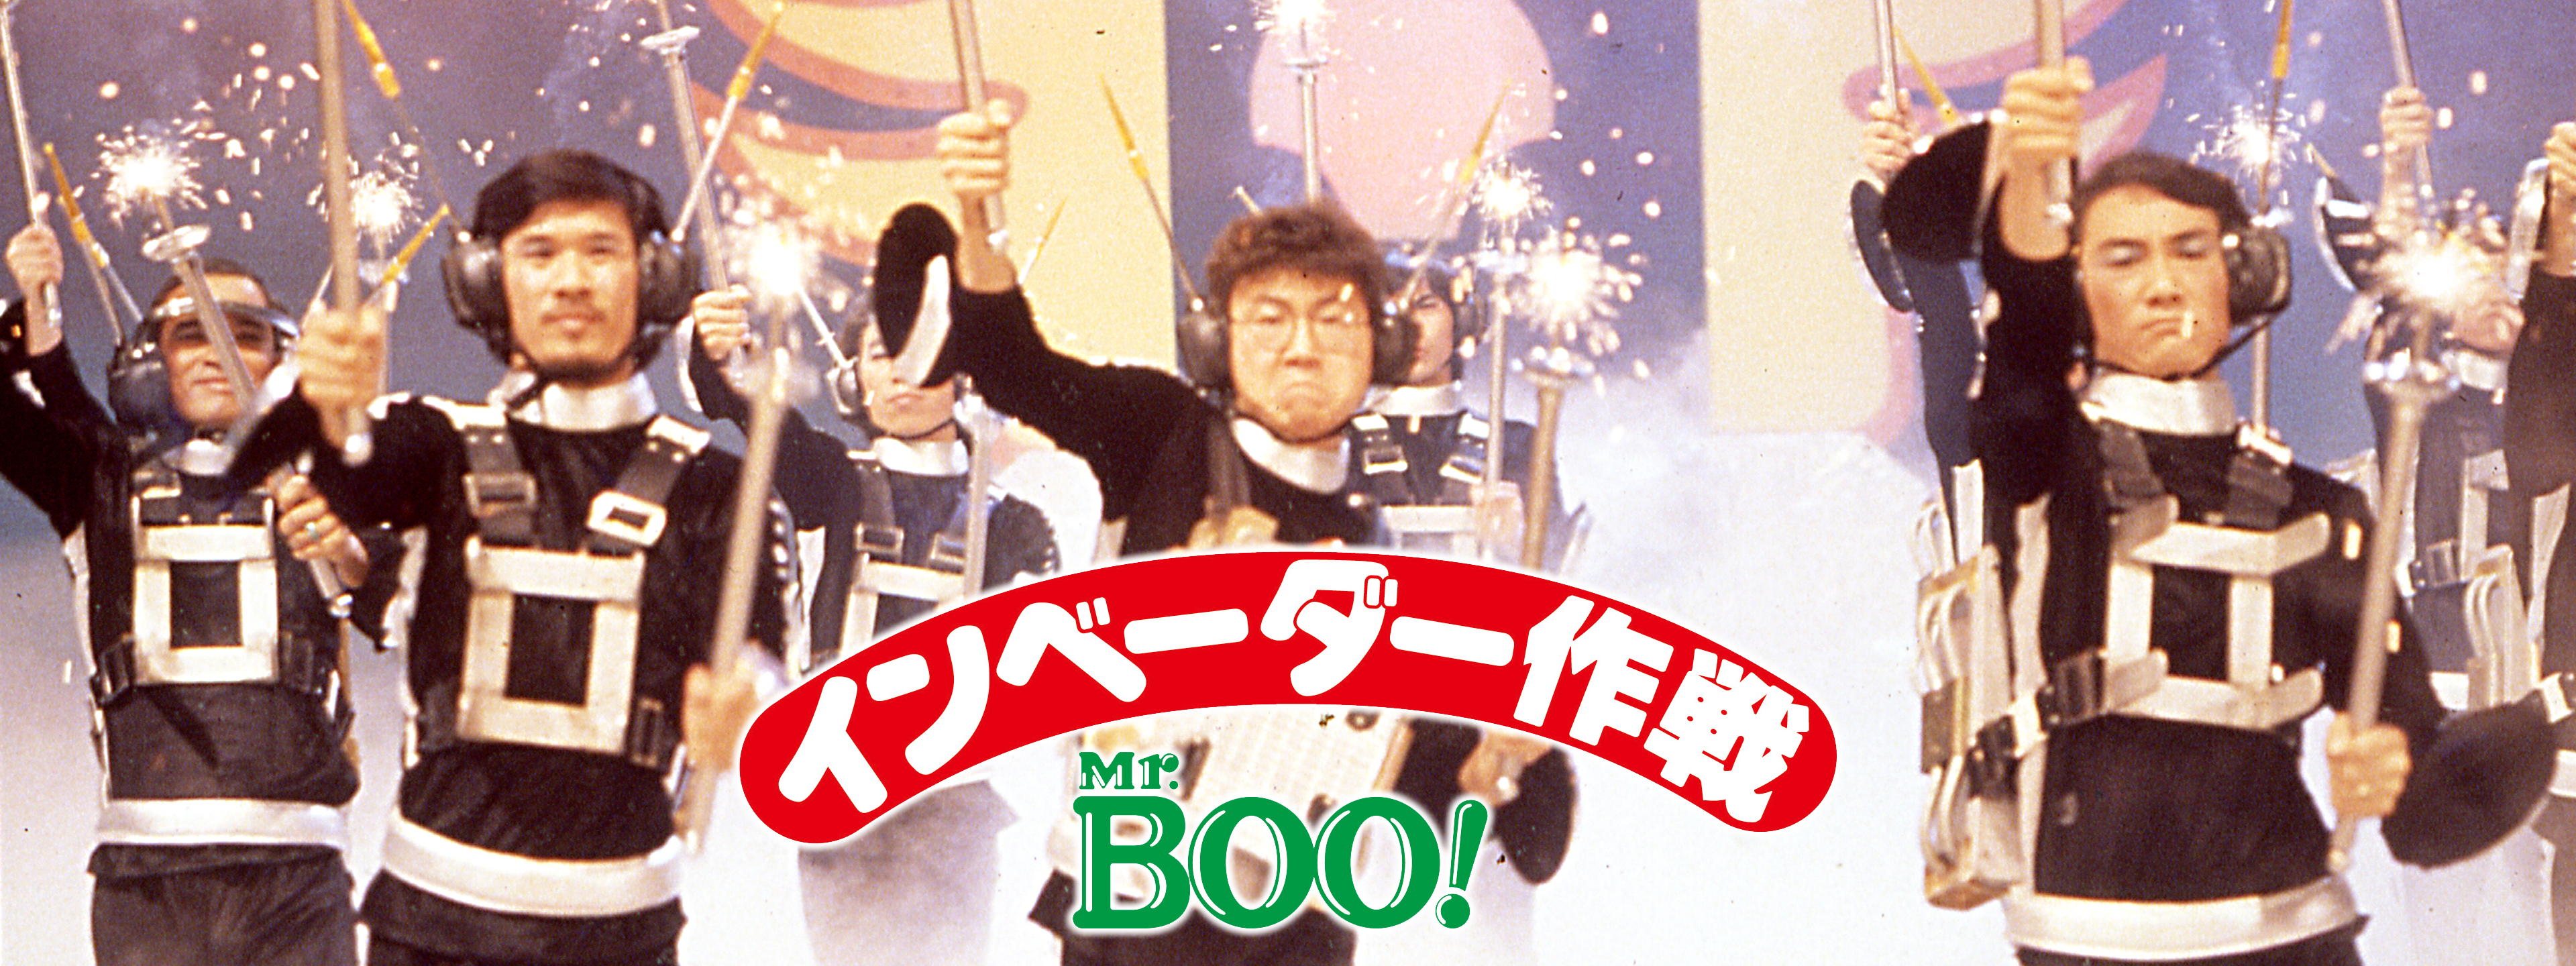 Mr. BOO! インベーダー作戦 | Hulu(フールー)